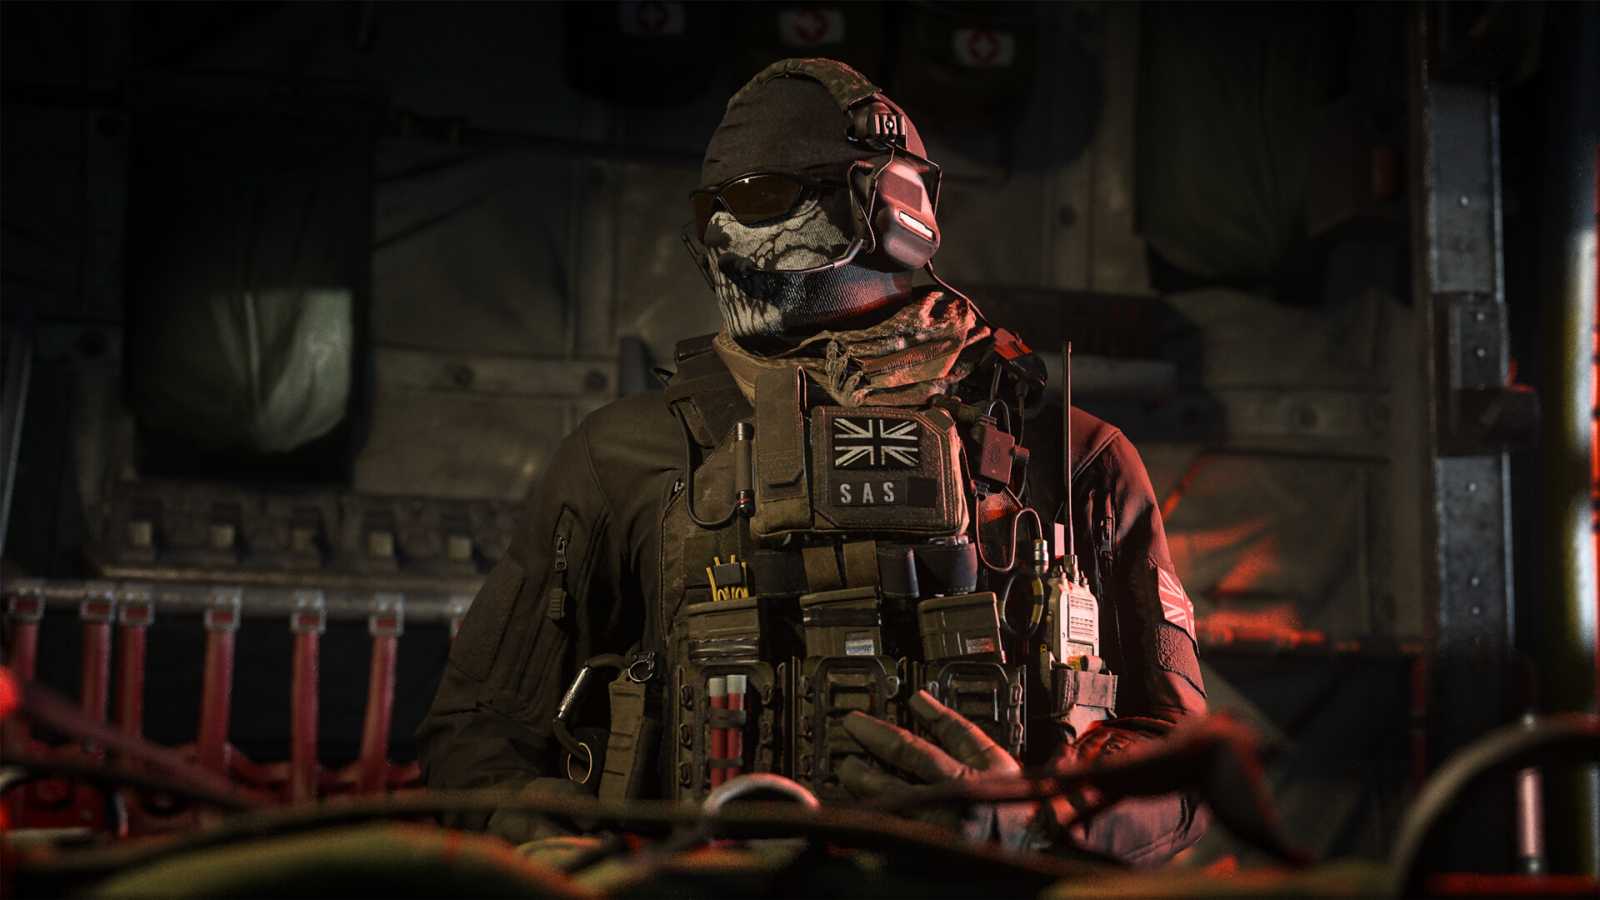 Minisérie Call of Duty: Modern Warfare bude pokračovat, chystají se další díly. Je toho hodně co vyprávět, říká režisér Brian Bloom